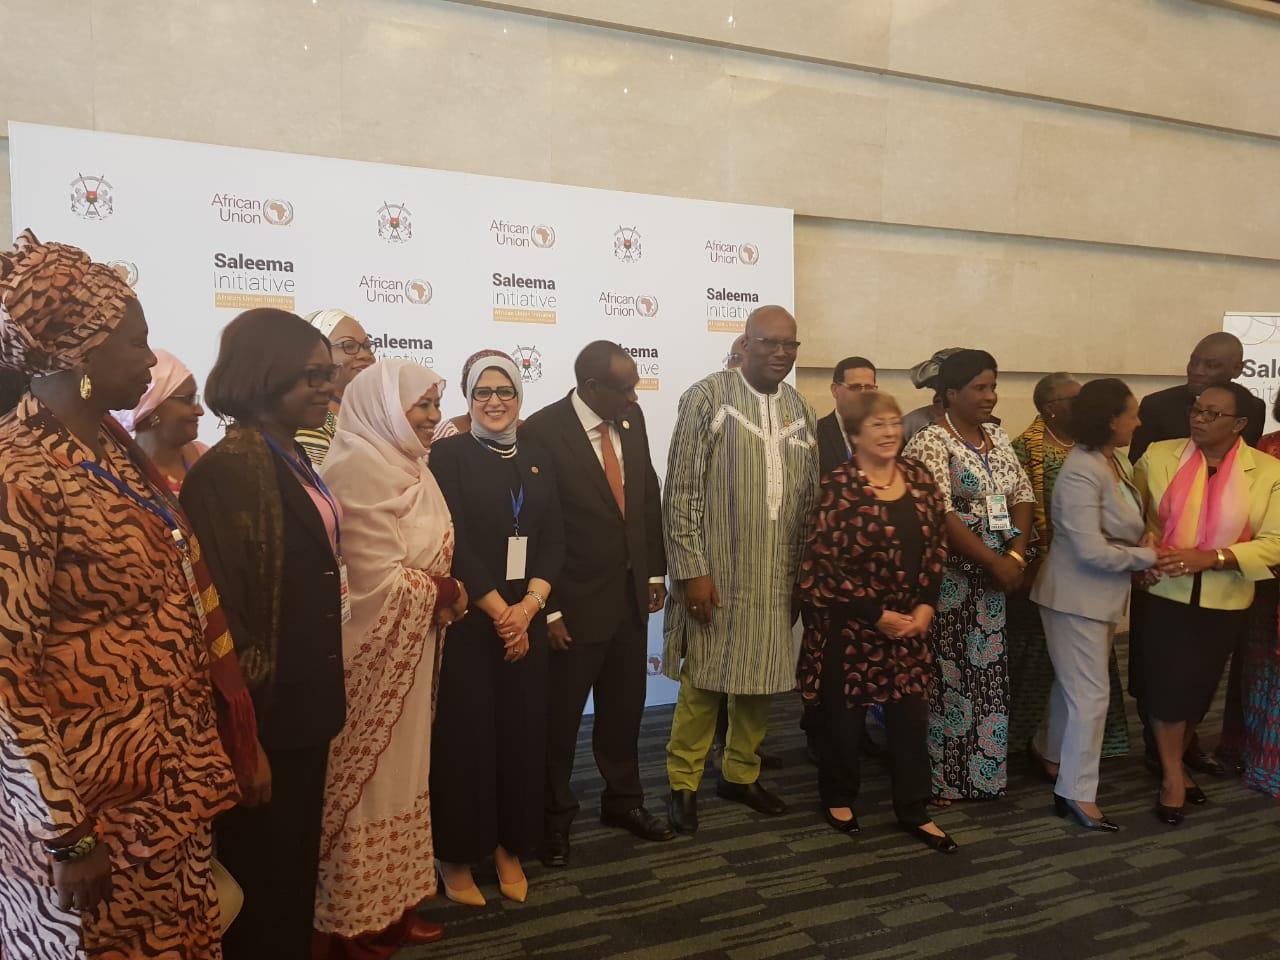   على هامش القمة الـ32 للاتحاد الأفريقي.. وزيرة الصحة تُشارك في إطلاق مبادرة الاتحاد الأفريقي للقضاء على «ختان الإناث» بأفريقيا